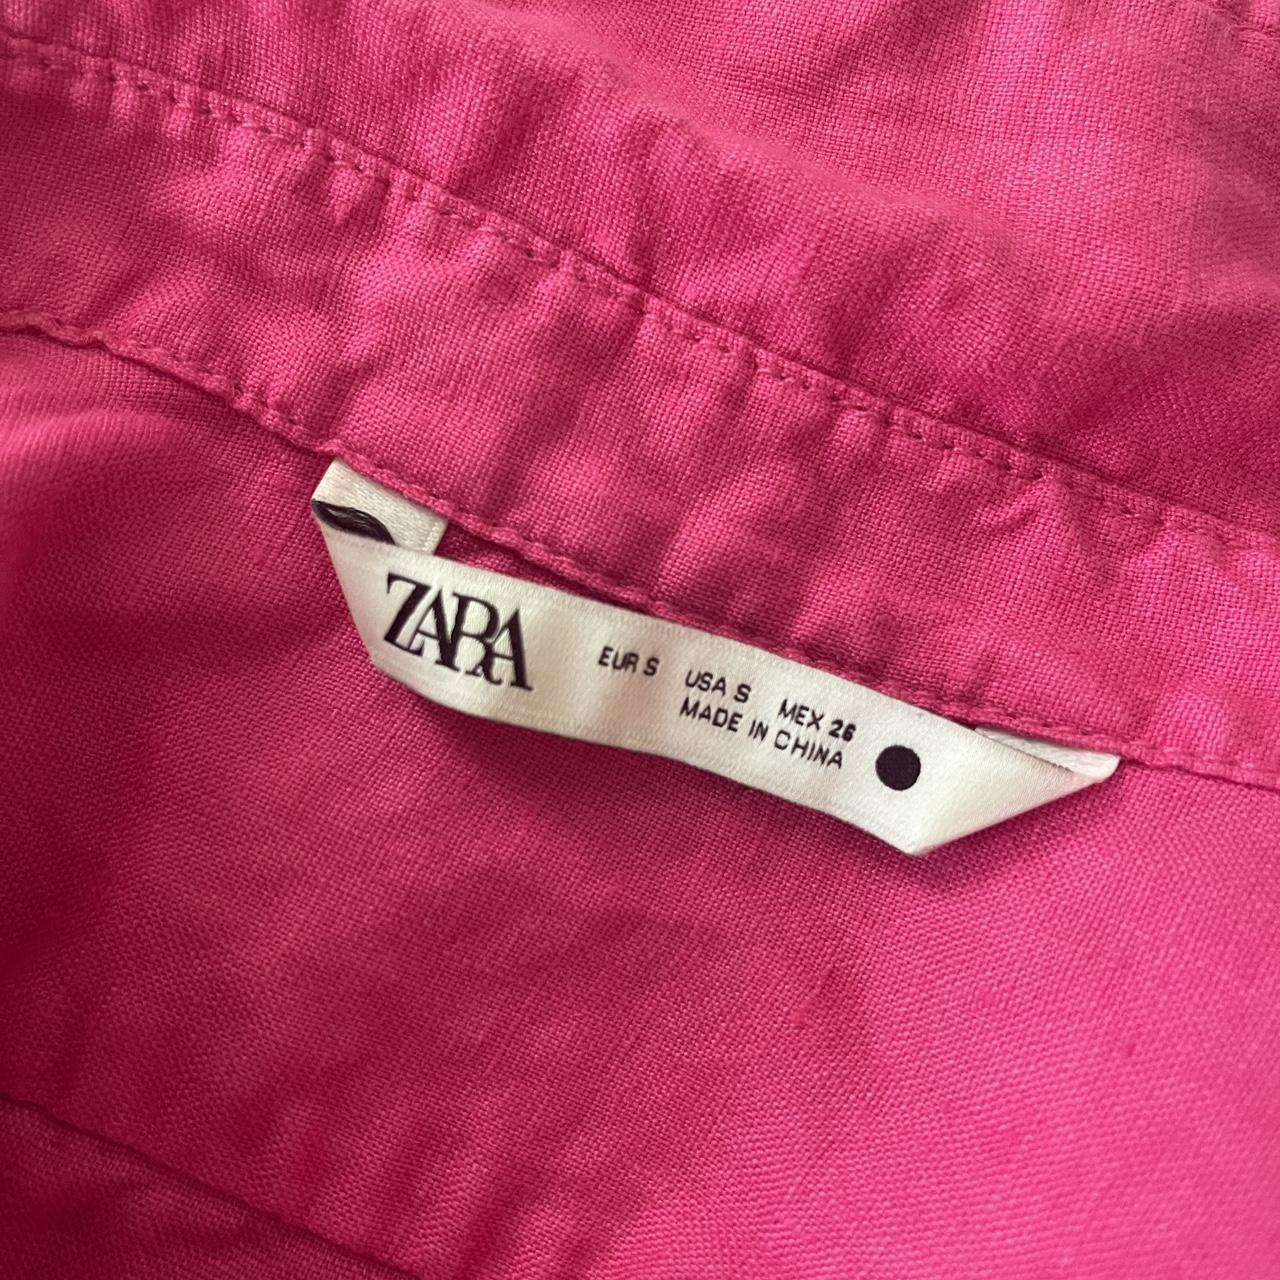 Hot Pink Zara Linen Button Up Shirt Small Worn once... - Depop